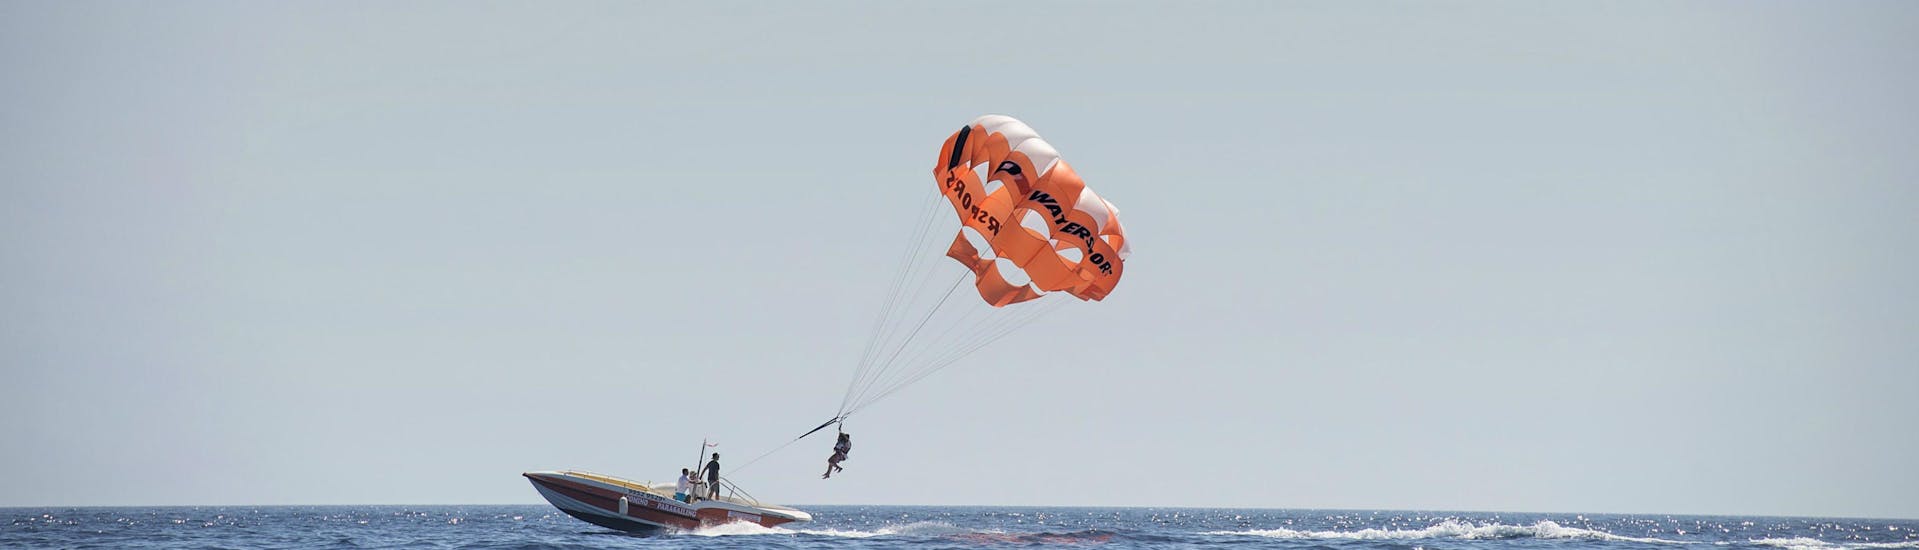 Parachute ascensionnel au-dessus de l'île de Comino.